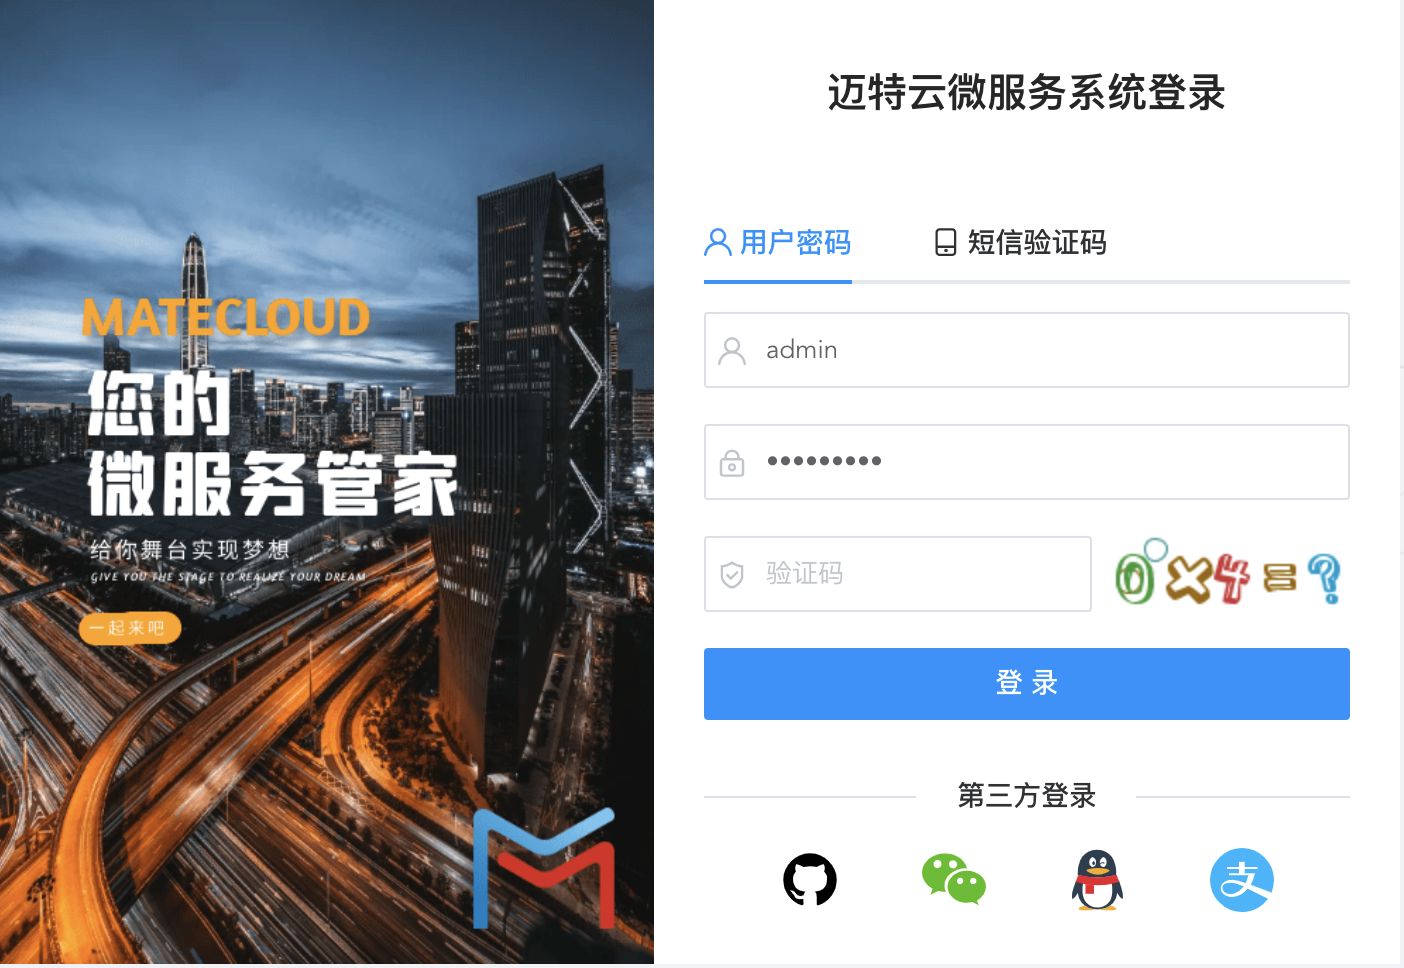 MateCloud 3.3.8 正式版发布， Spring Cloud Alibaba 的微服务平台